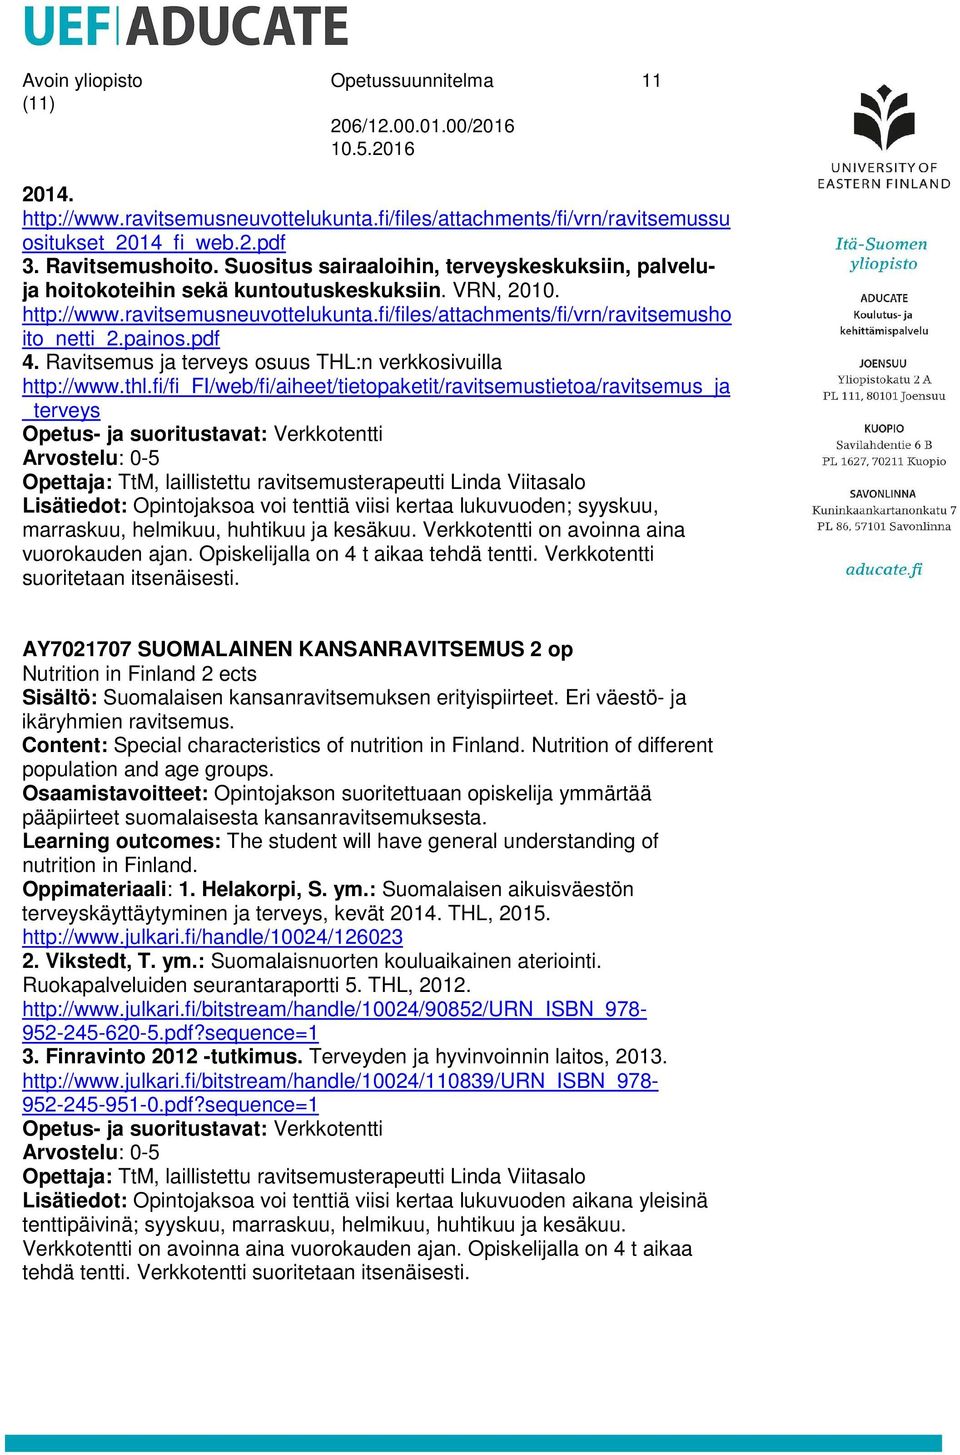 pdf 4. Ravitsemus ja terveys osuus THL:n verkkosivuilla http://www.thl.